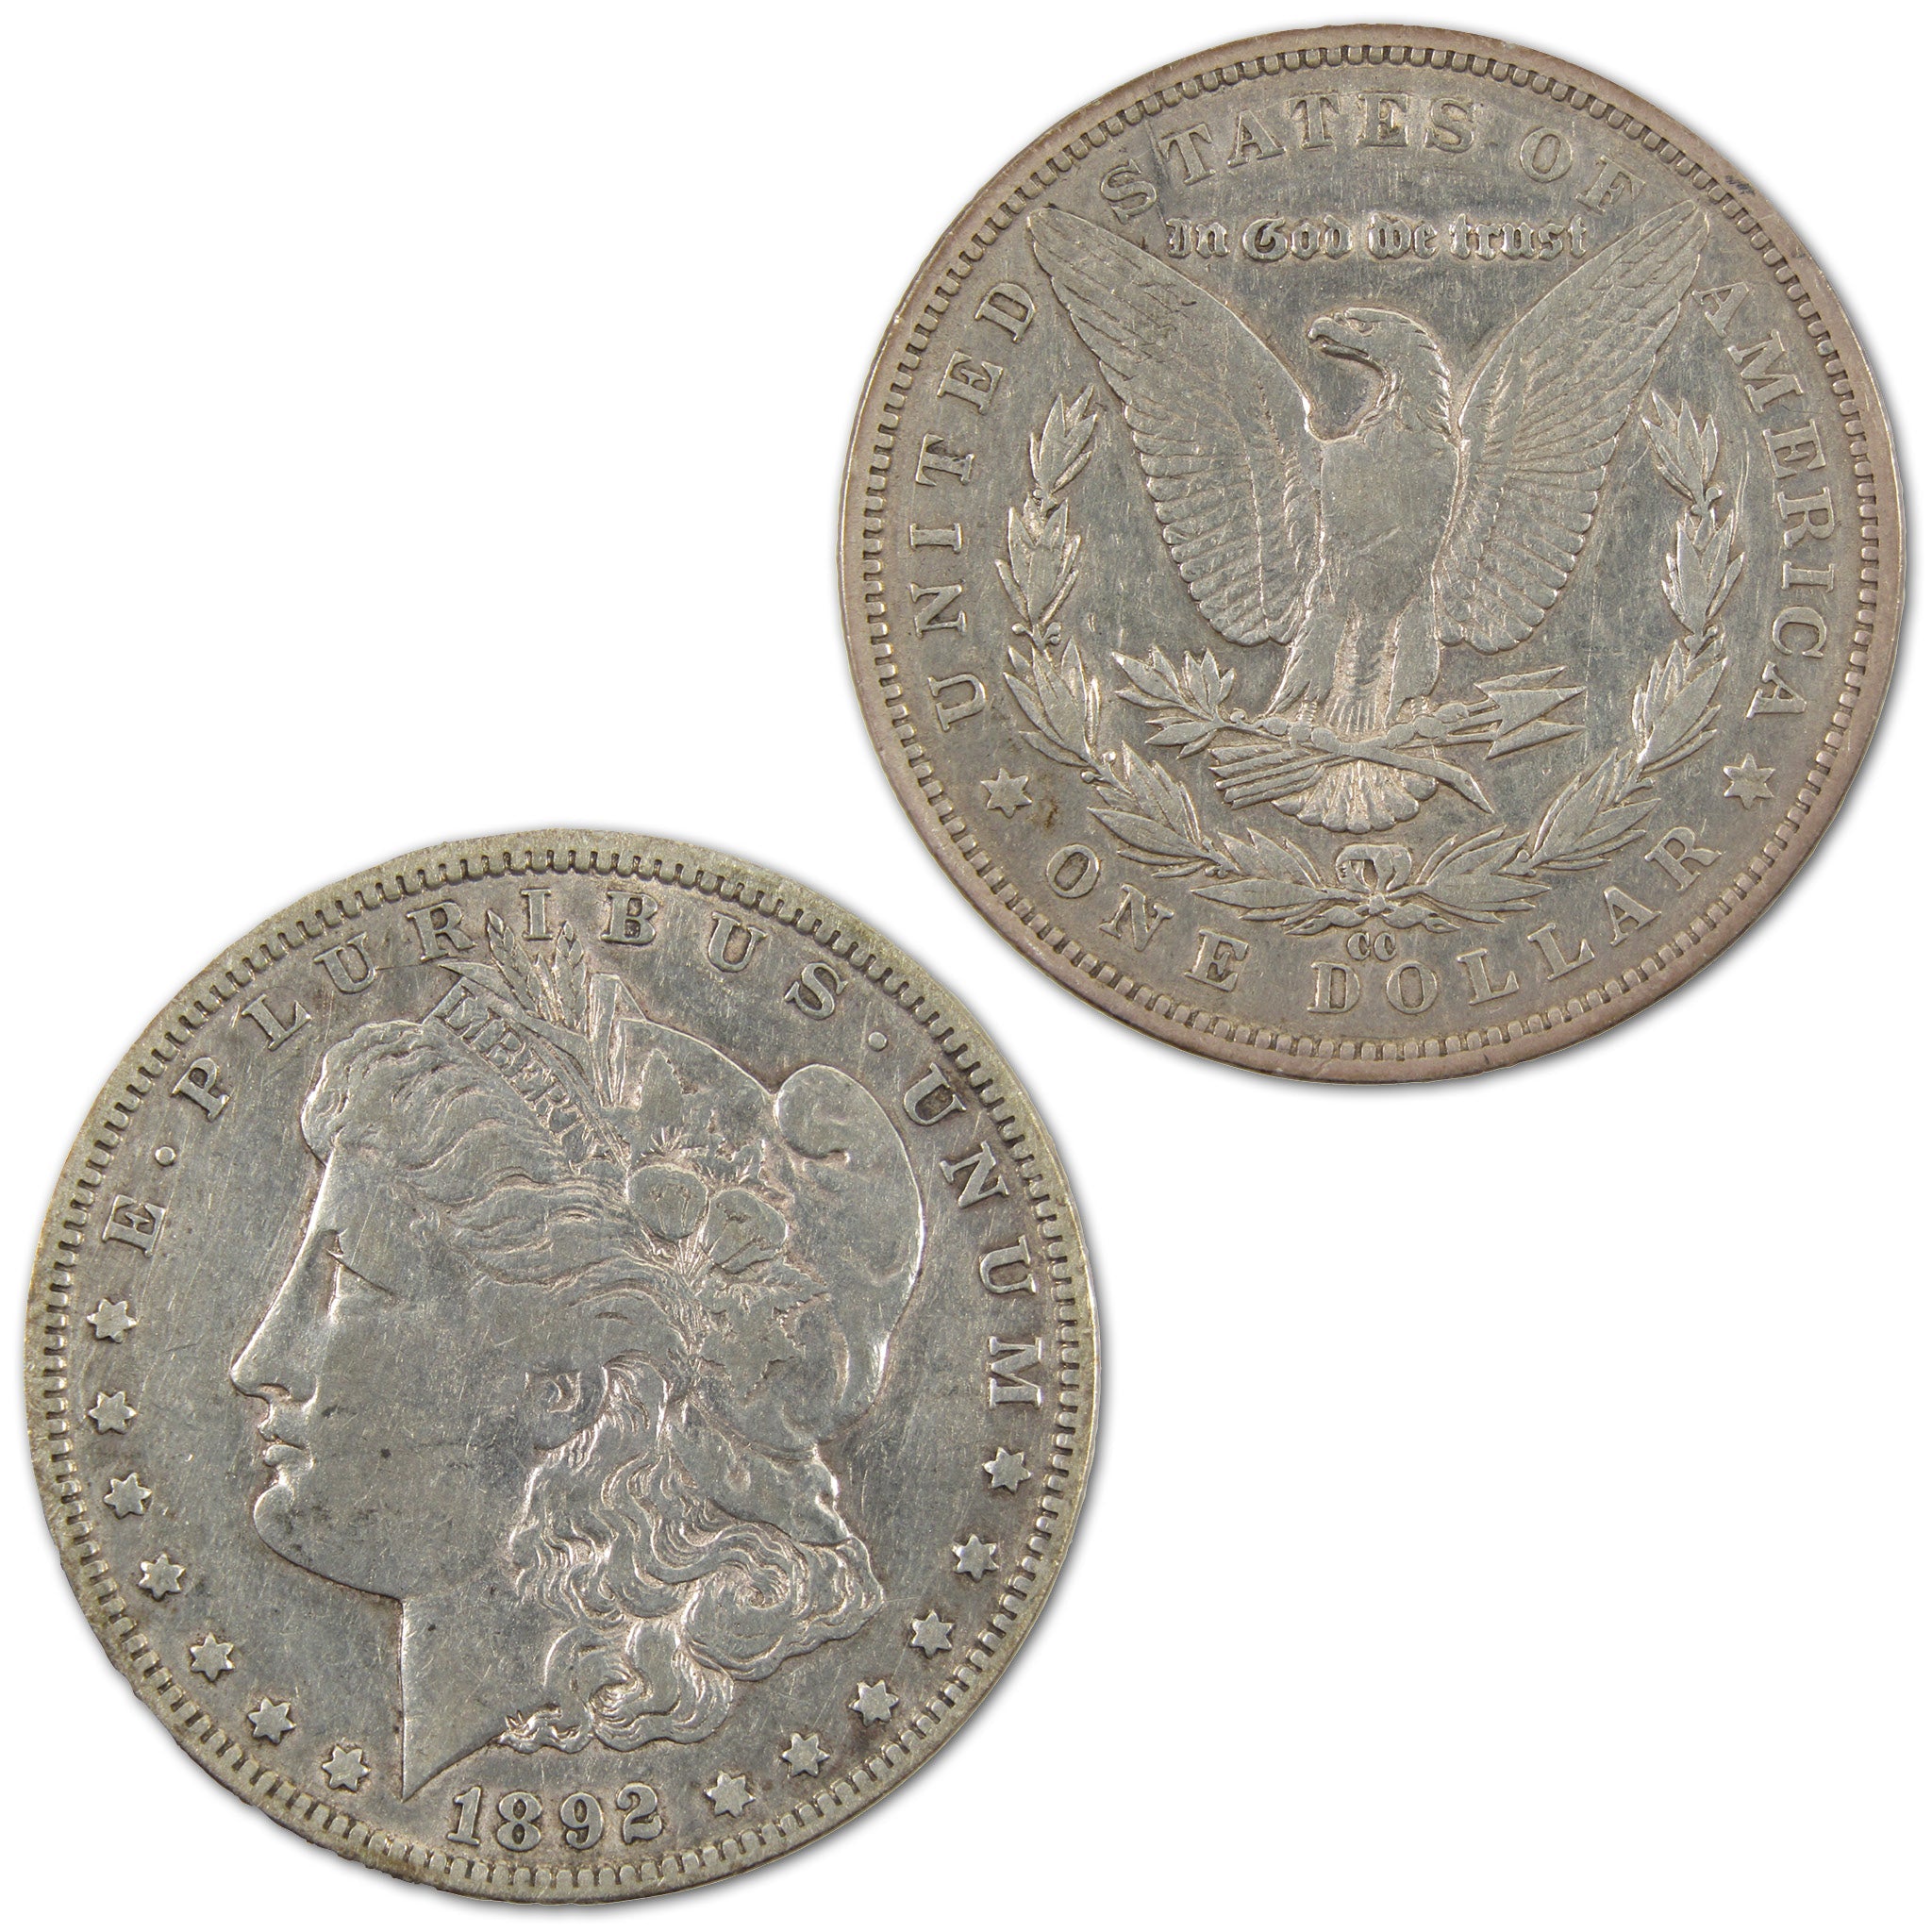 1892 CC Morgan Dollar XF EF Extremely Fine Details Silver SKU:I10763 - Morgan coin - Morgan silver dollar - Morgan silver dollar for sale - Profile Coins &amp; Collectibles